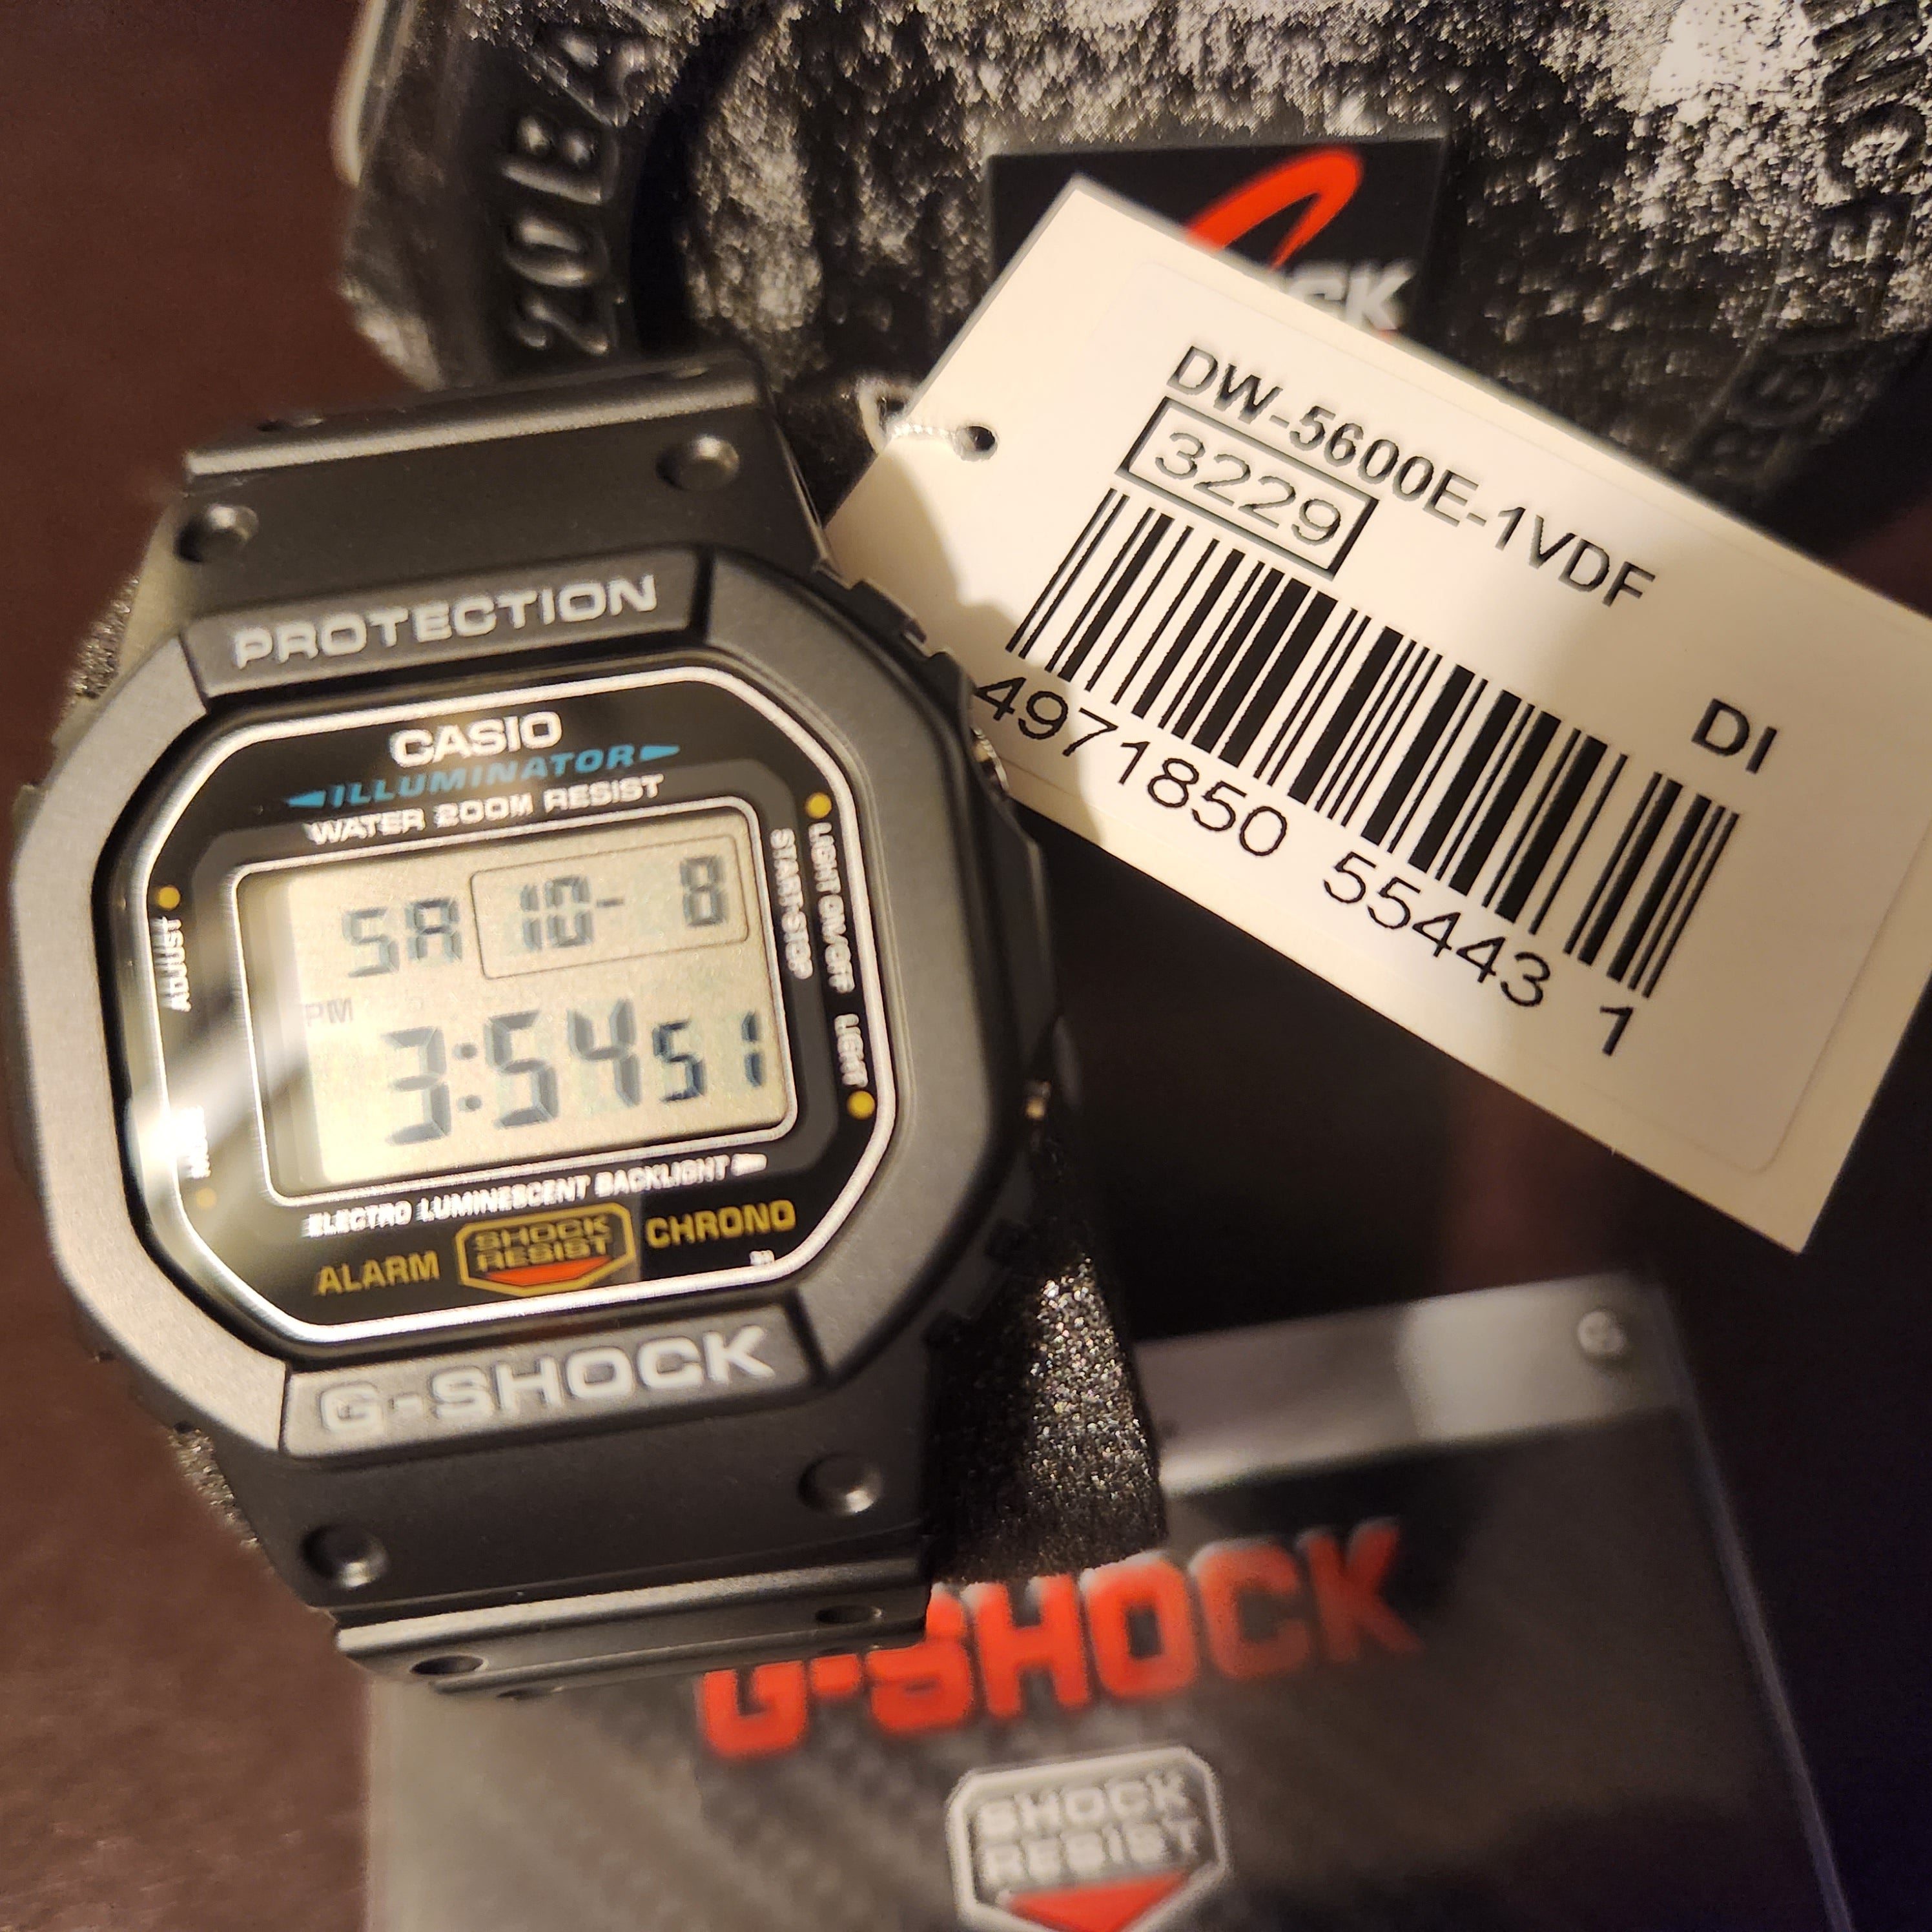 Reloj pulsera Casio G-Shock DW5600 de cuerpo color negro, digital